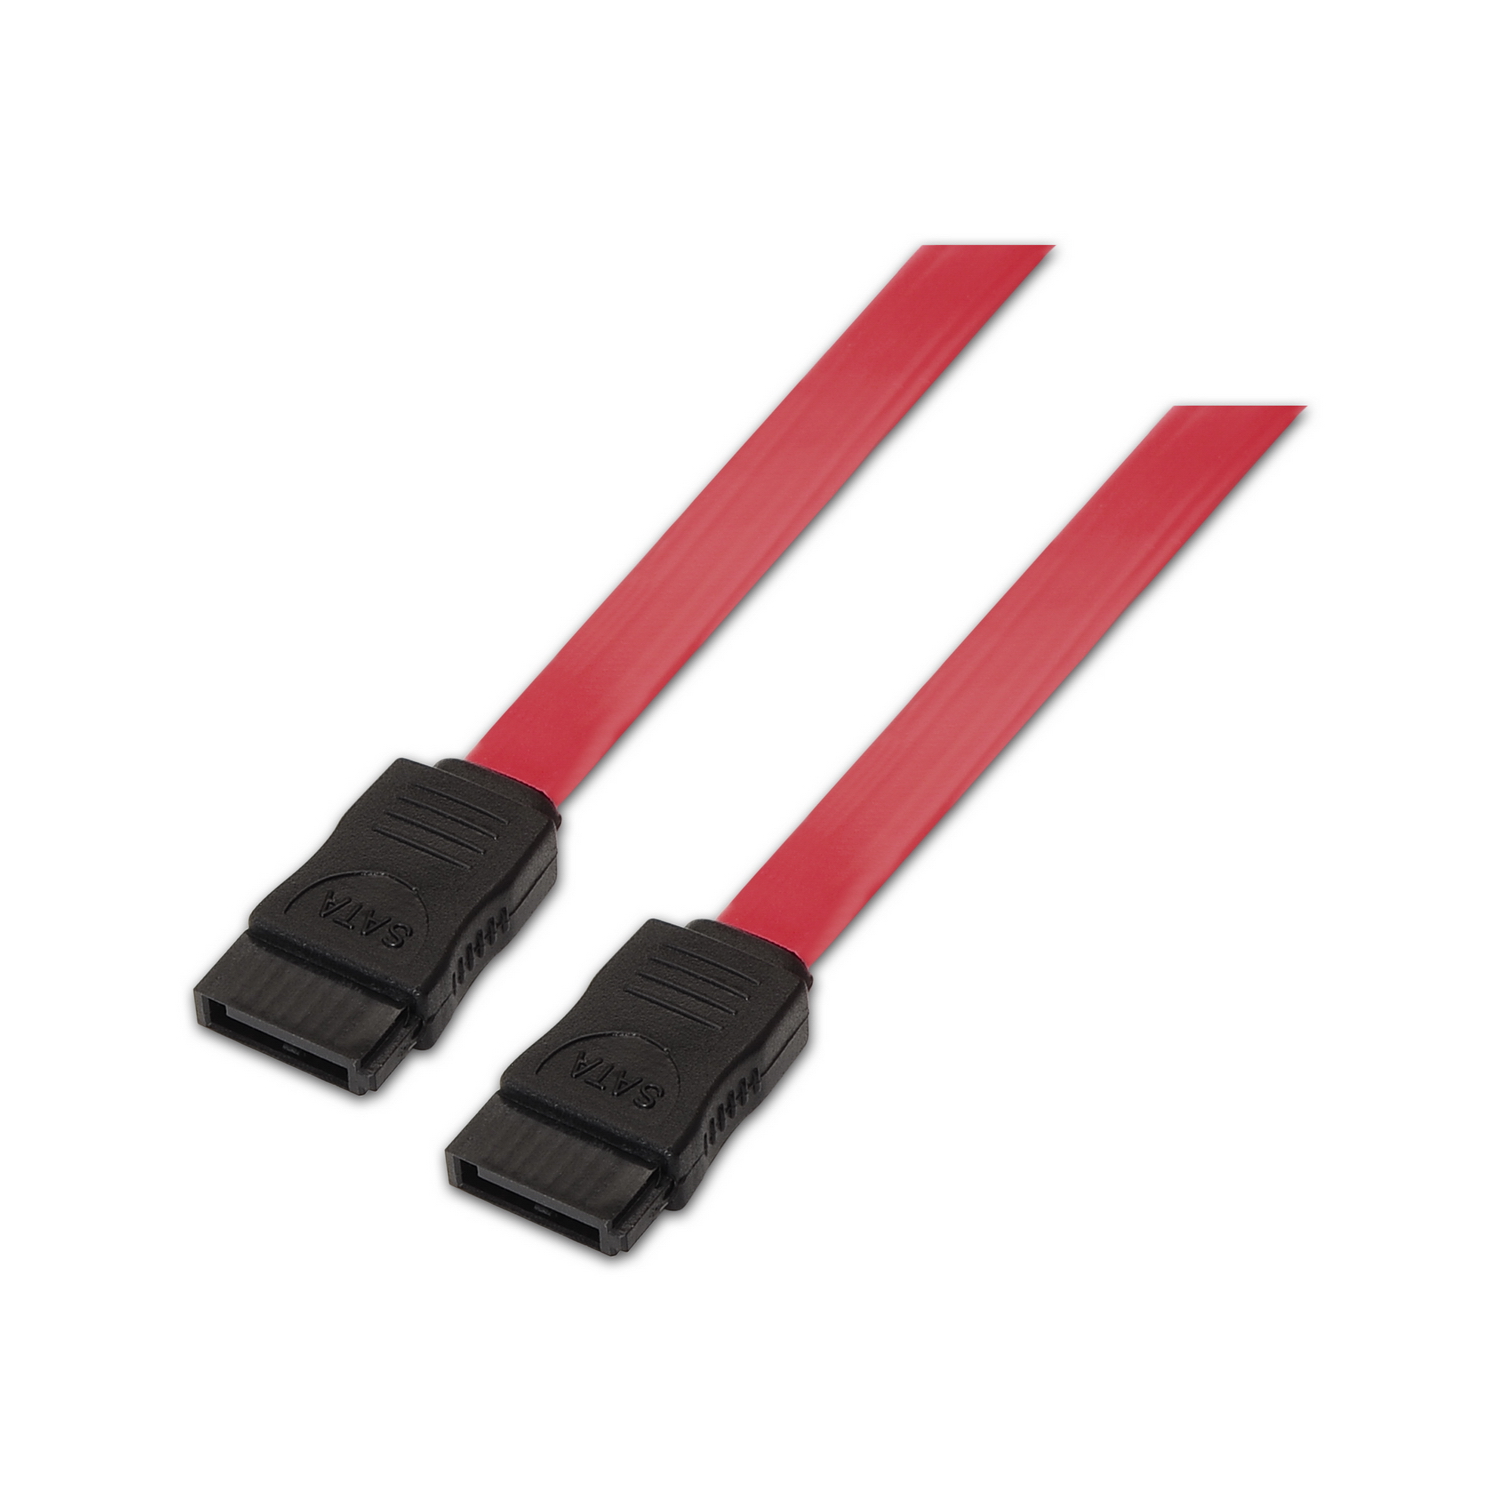 Aisens Câble SATA III Data 6G Data - 0.5m pour Disque Dur SATA I - II - III SSD - Couleur Rouge